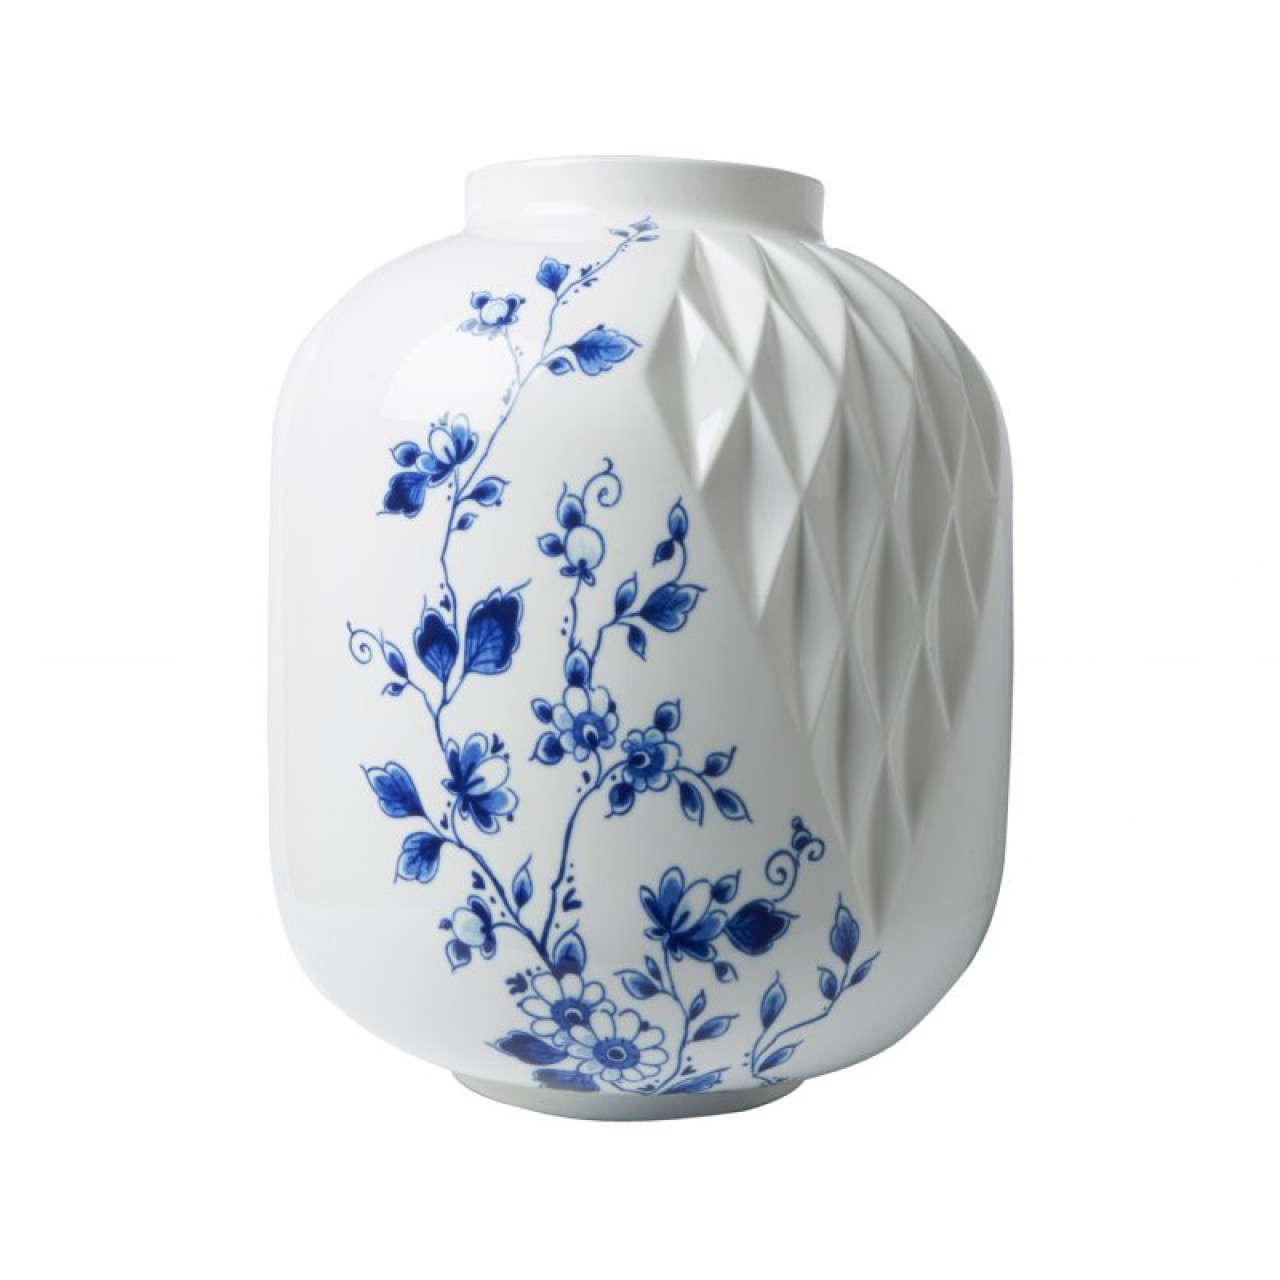 Nieuw maanjaar Analytisch Watt Buy Blauw Vouw vases set of 4 » Heinen Delfts Blauw